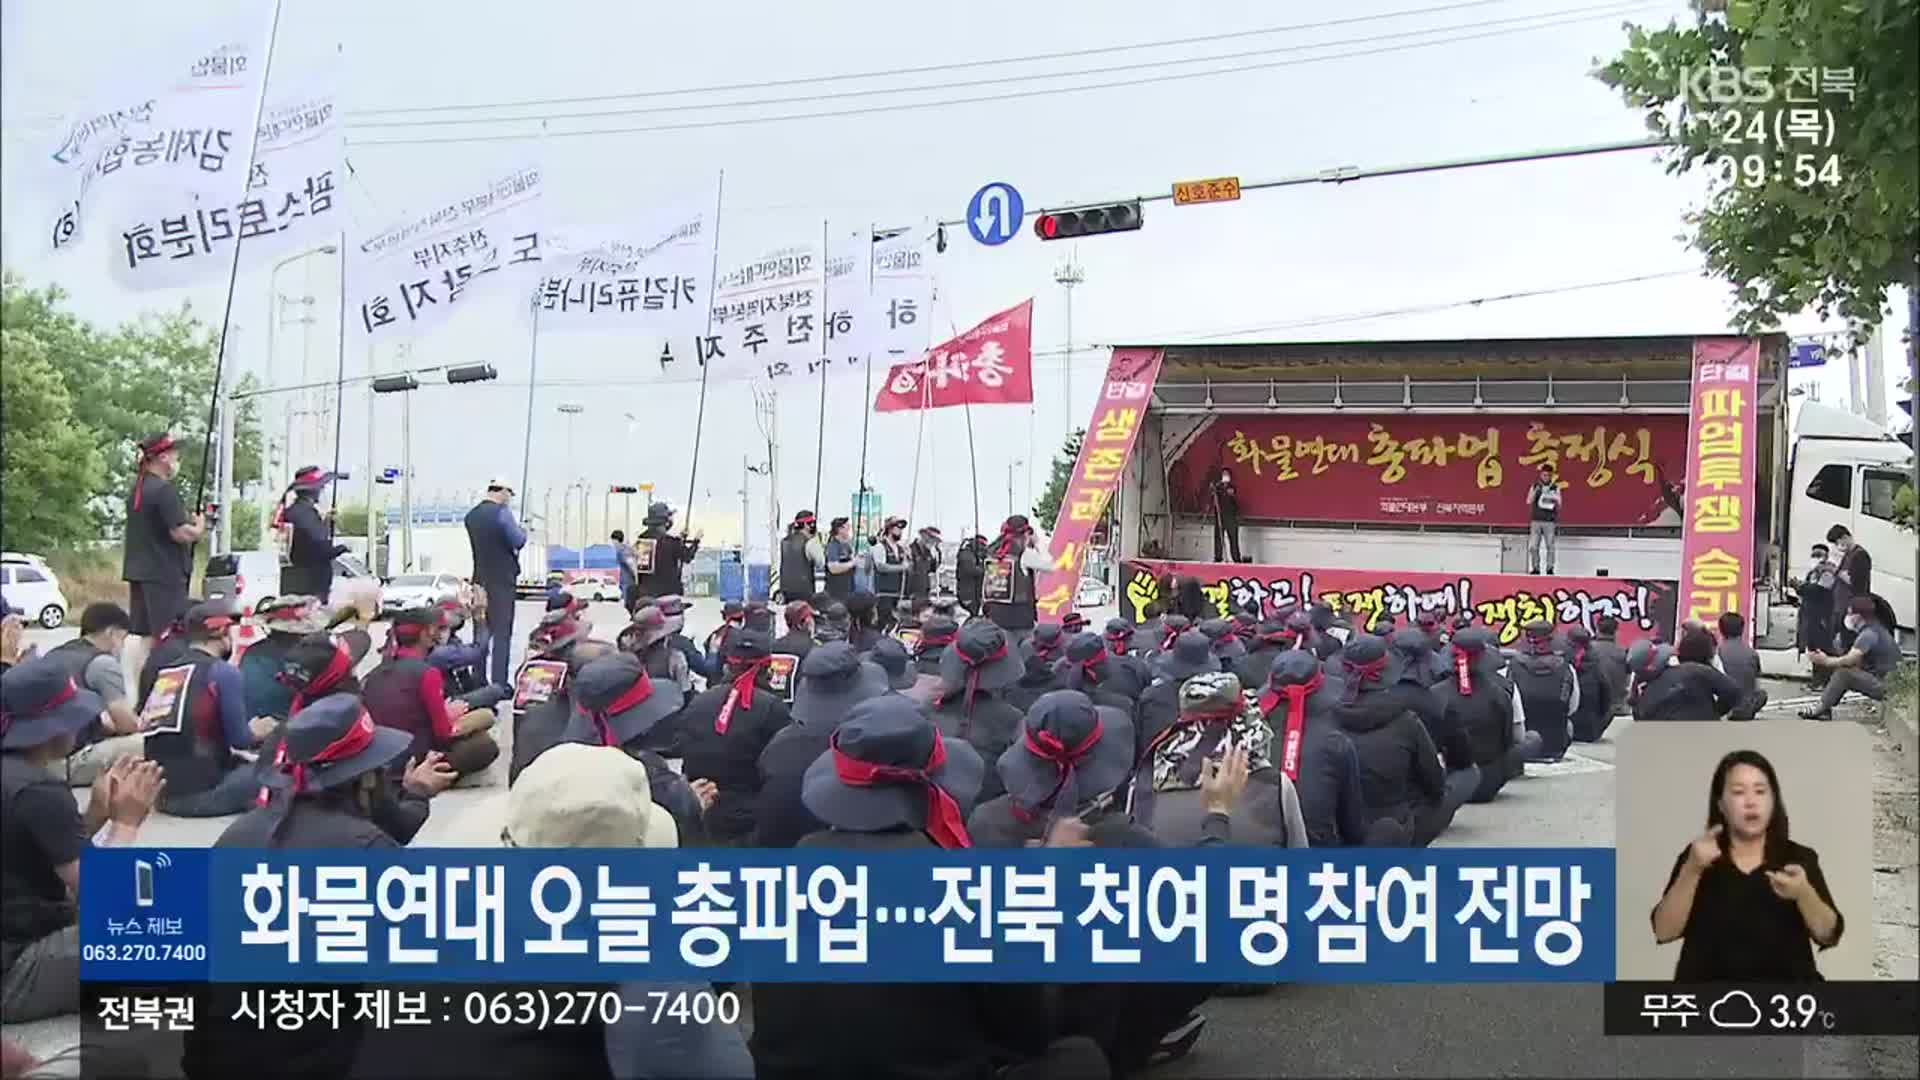 화물연대 오늘 총파업…전북 천여 명 참여 전망